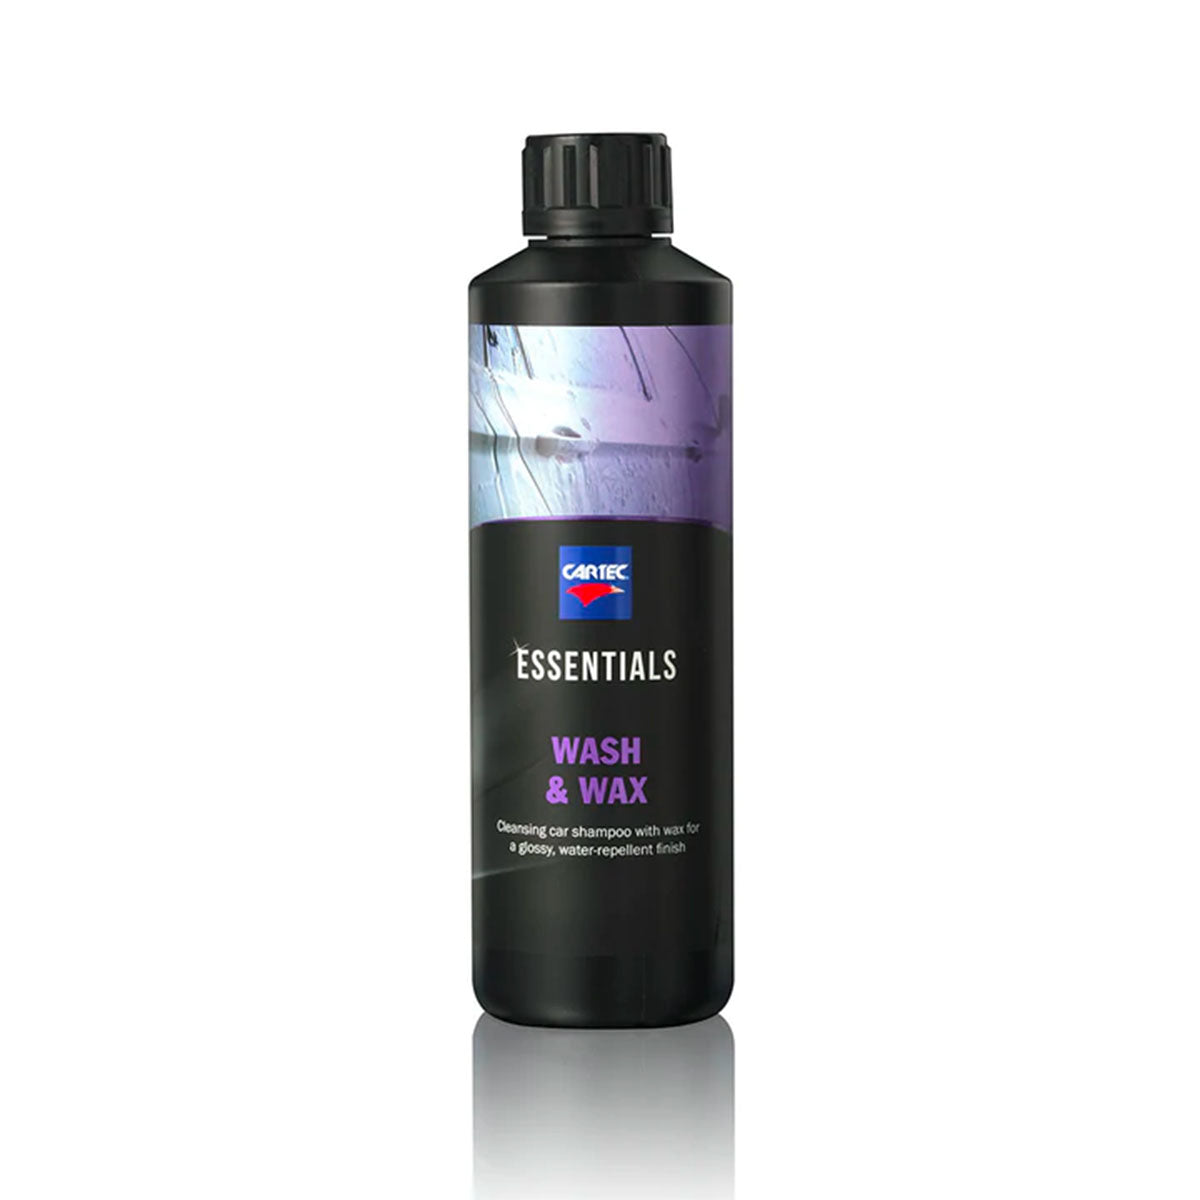 Cartec Essential Wash & Wax Shampoo Protettivo con SiO2 500ml